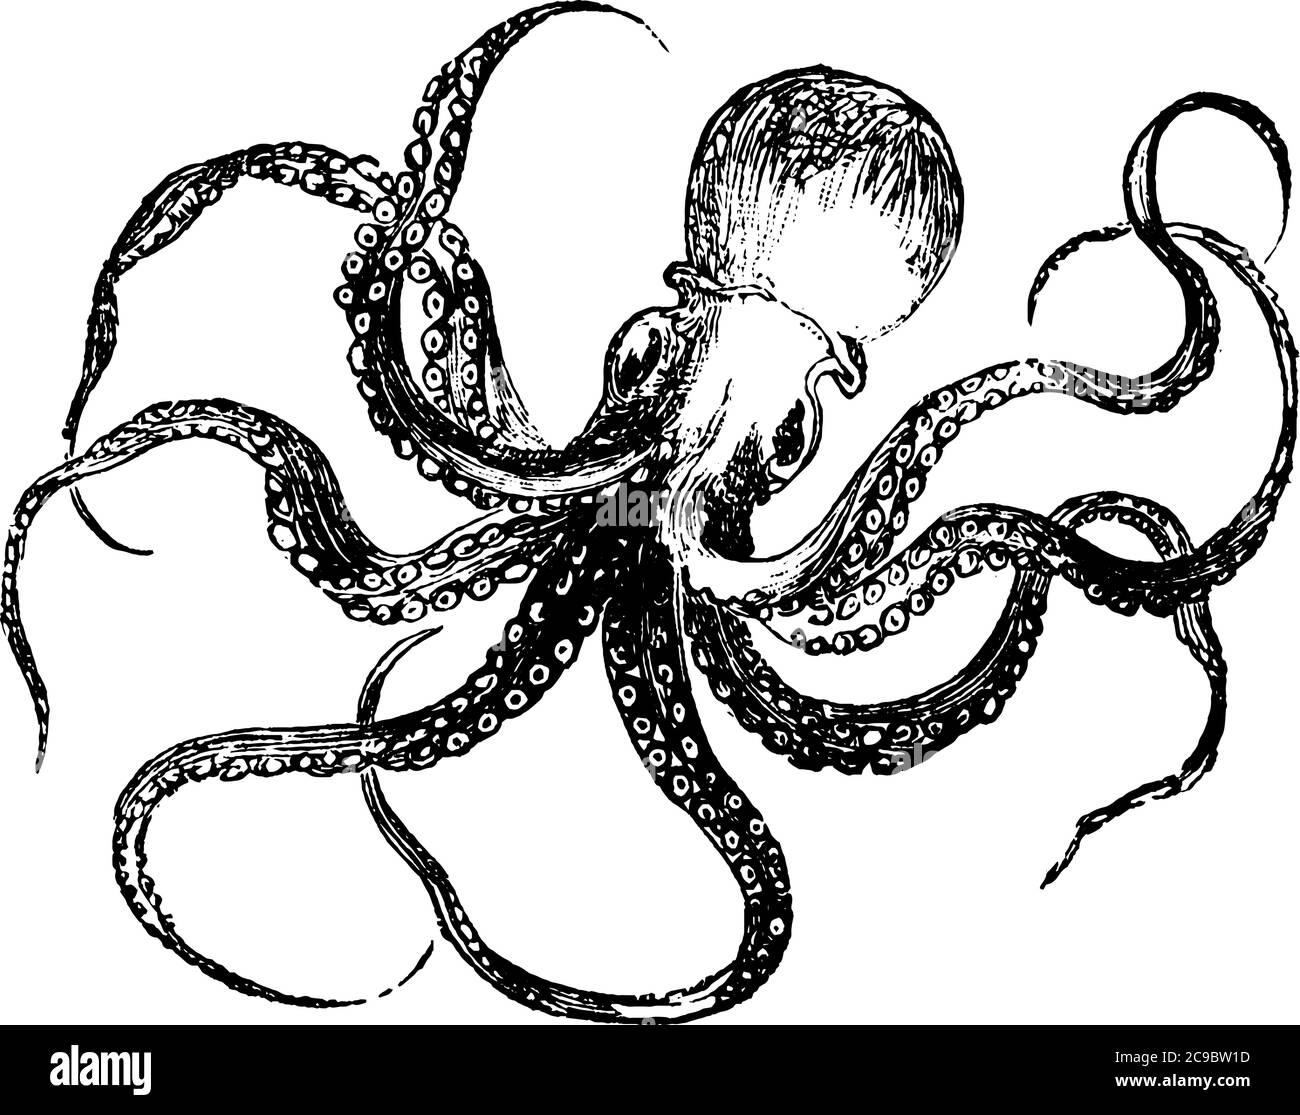 Polpo, un mollusco legato al calamaro. Ha otto braccia con ventose, disposte intorno ad un corpo centrale morbido, baggy., disegno di linea vintage o incisino Illustrazione Vettoriale